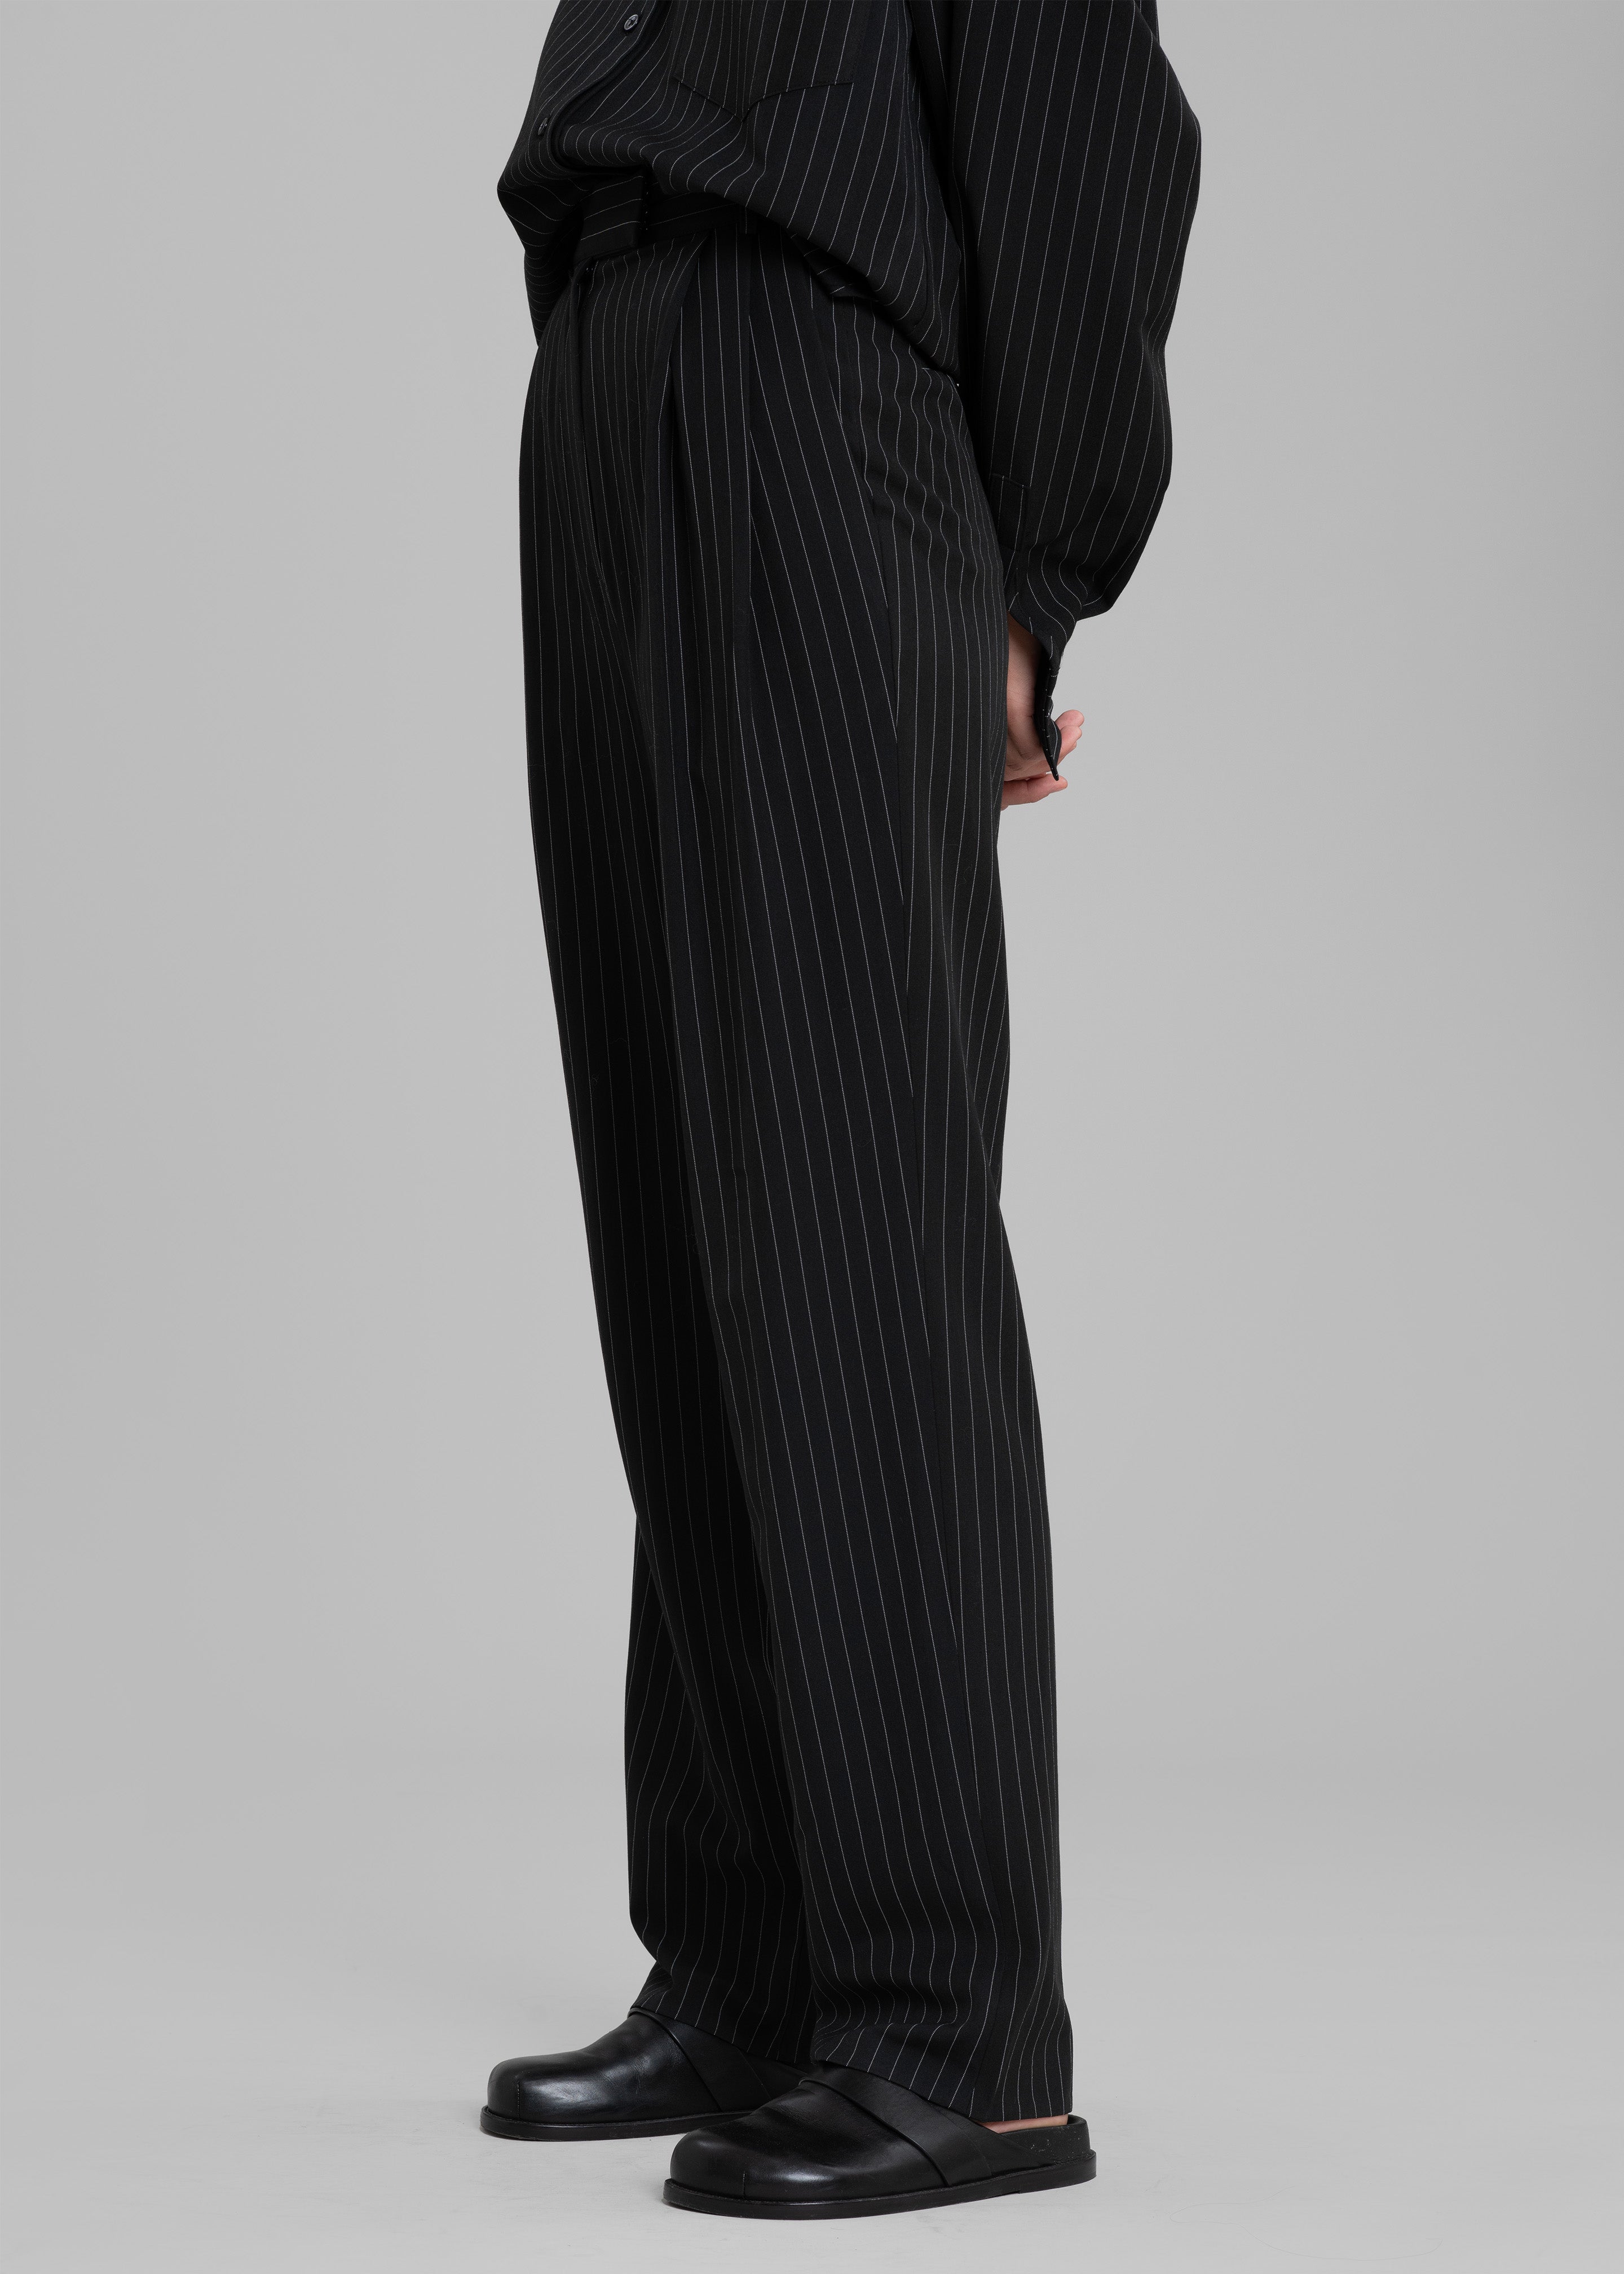 Bea Fluid Pinstripe Suit Pants - Black/White